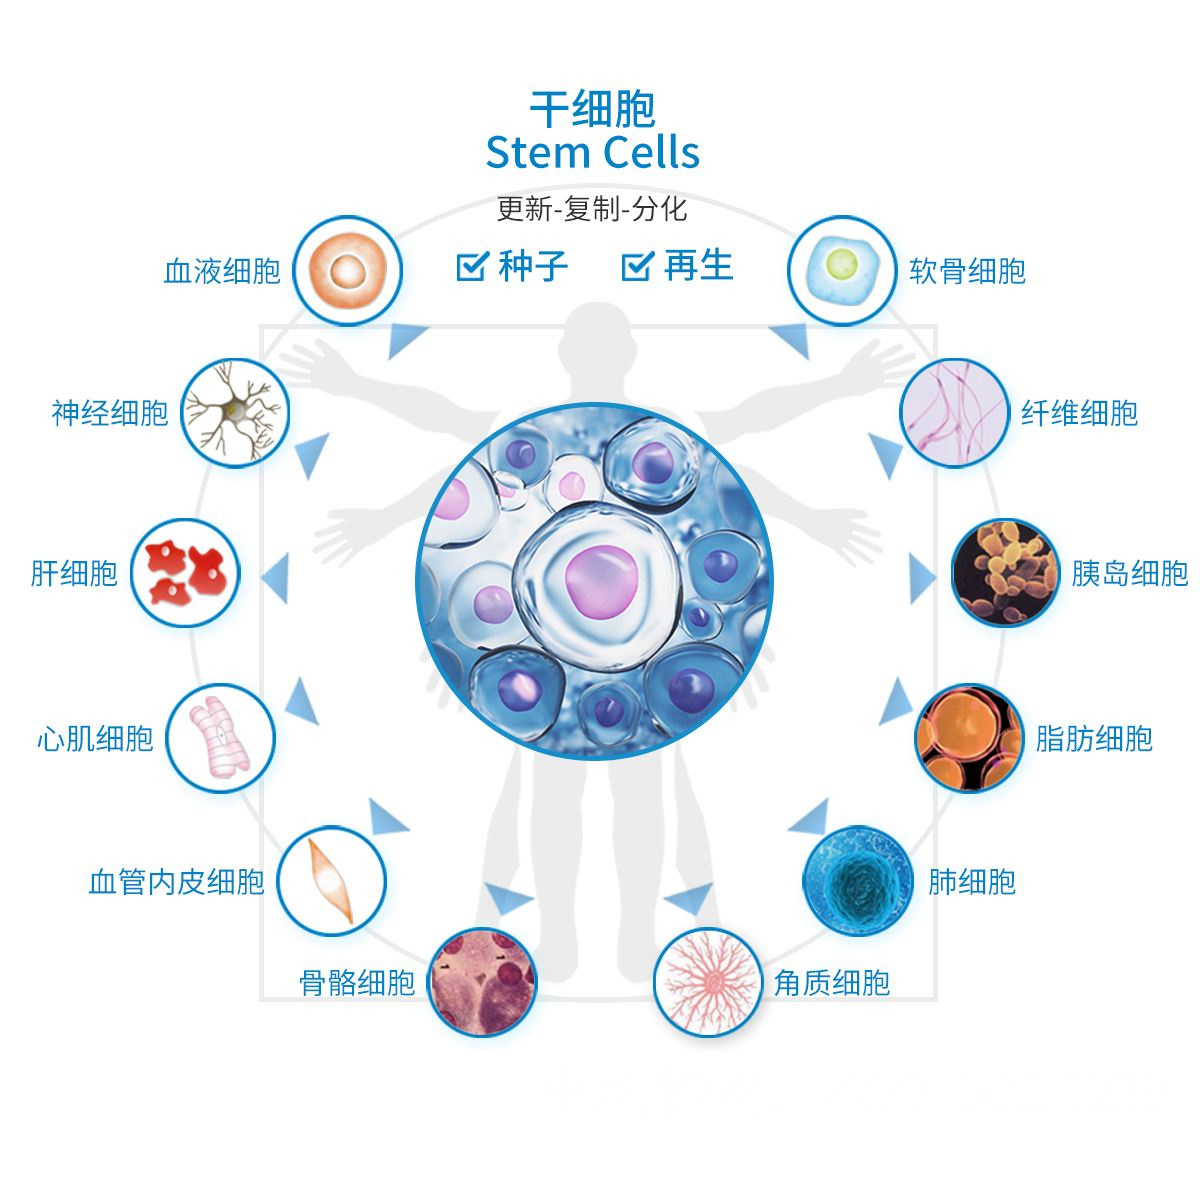 被检查出来了卵巢早衰，听说北京301可以打干细胞治疗，想了解一下北京医院干细胞注射是真的吗